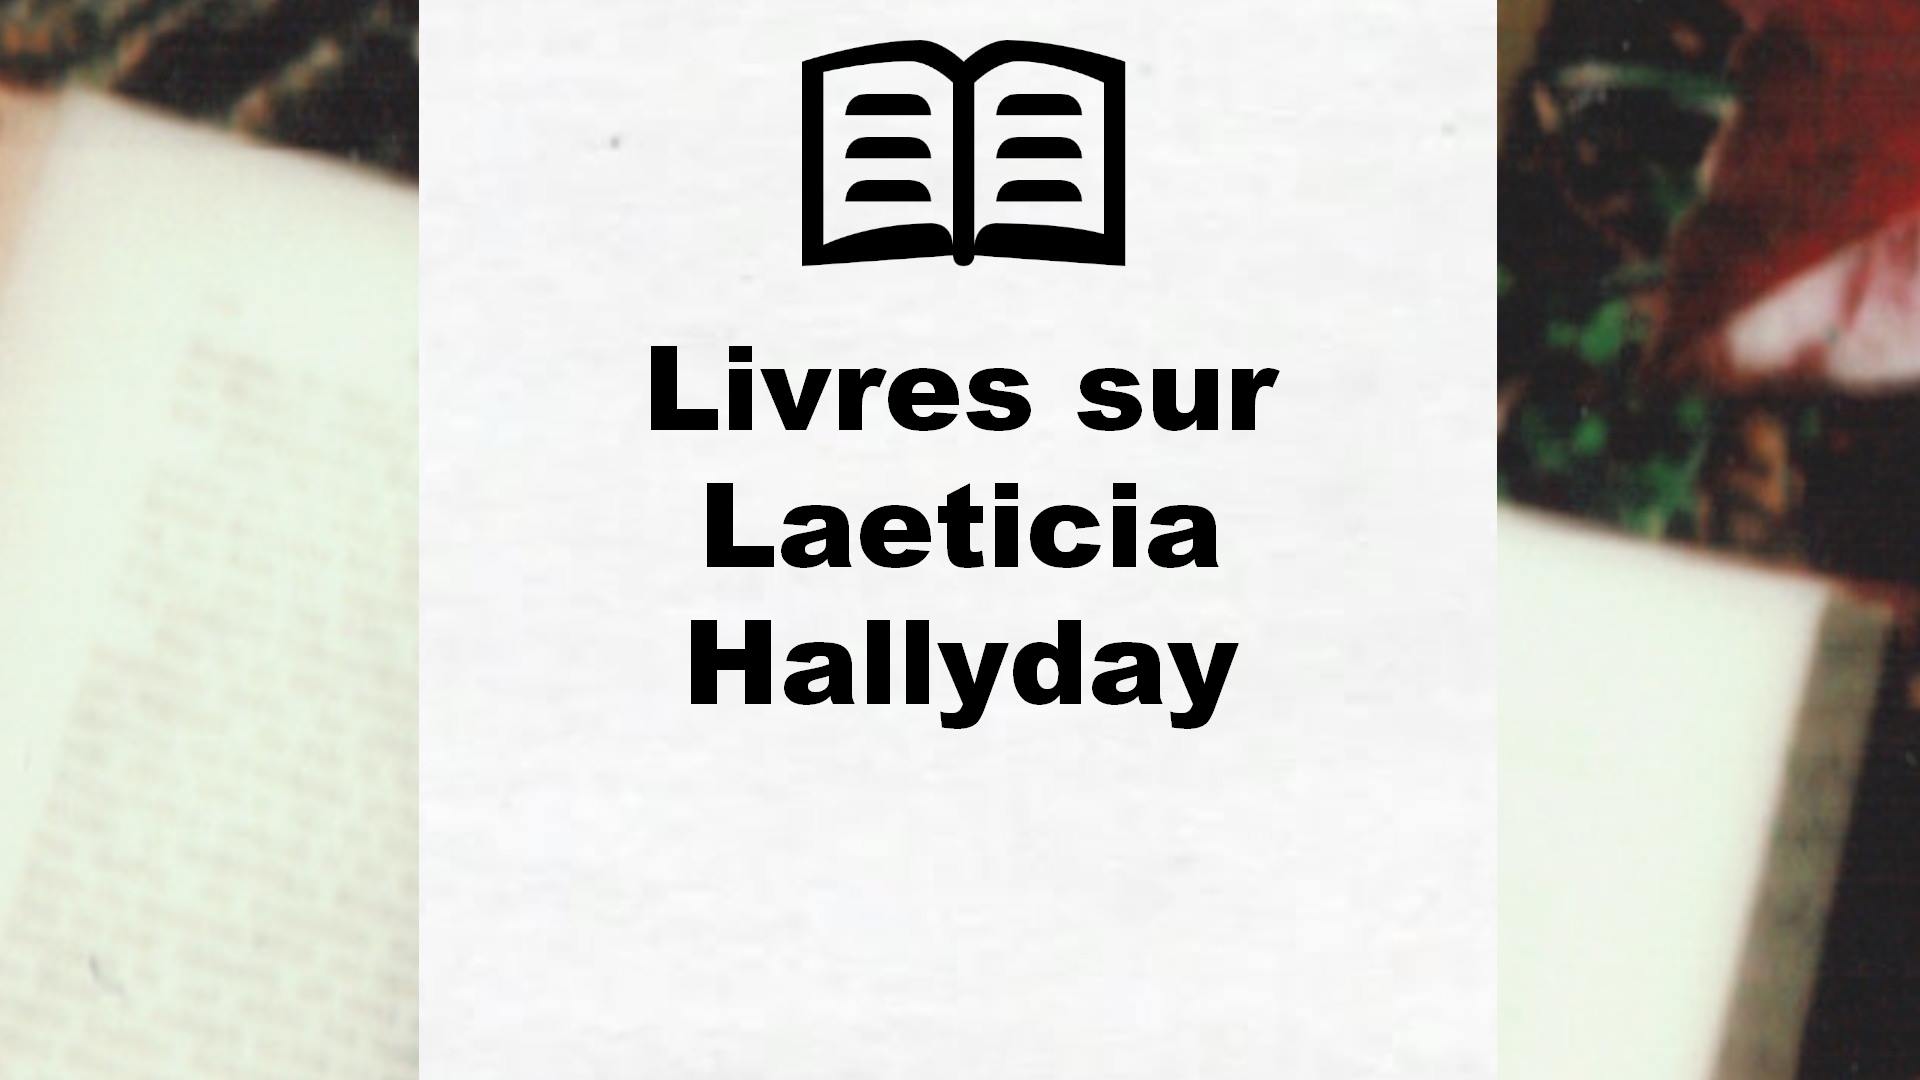 Livres sur Laeticia Hallyday